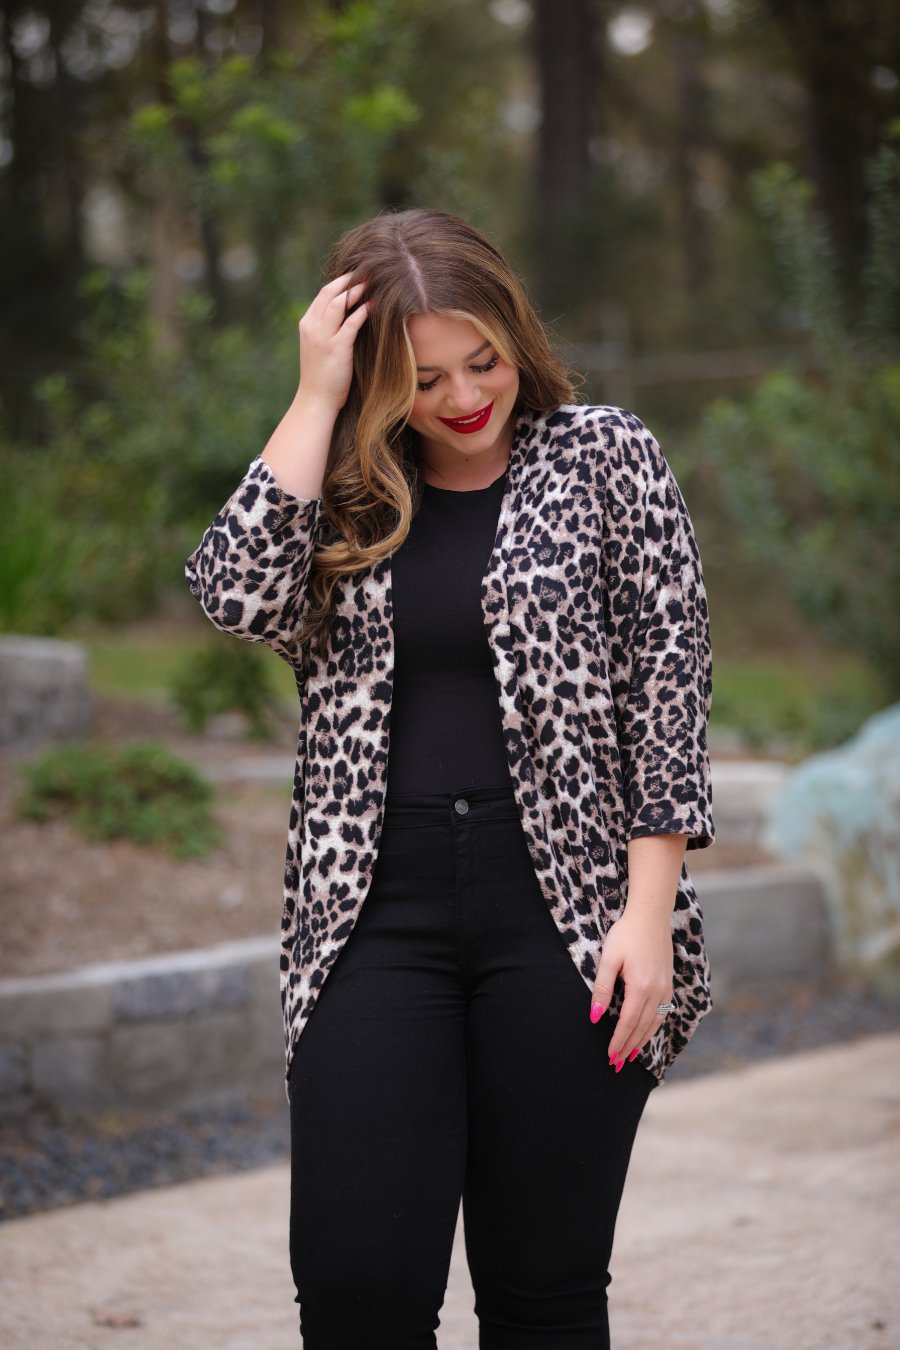 Sierra Cocoon Leopard Cardigan - Jess Lea Boutique